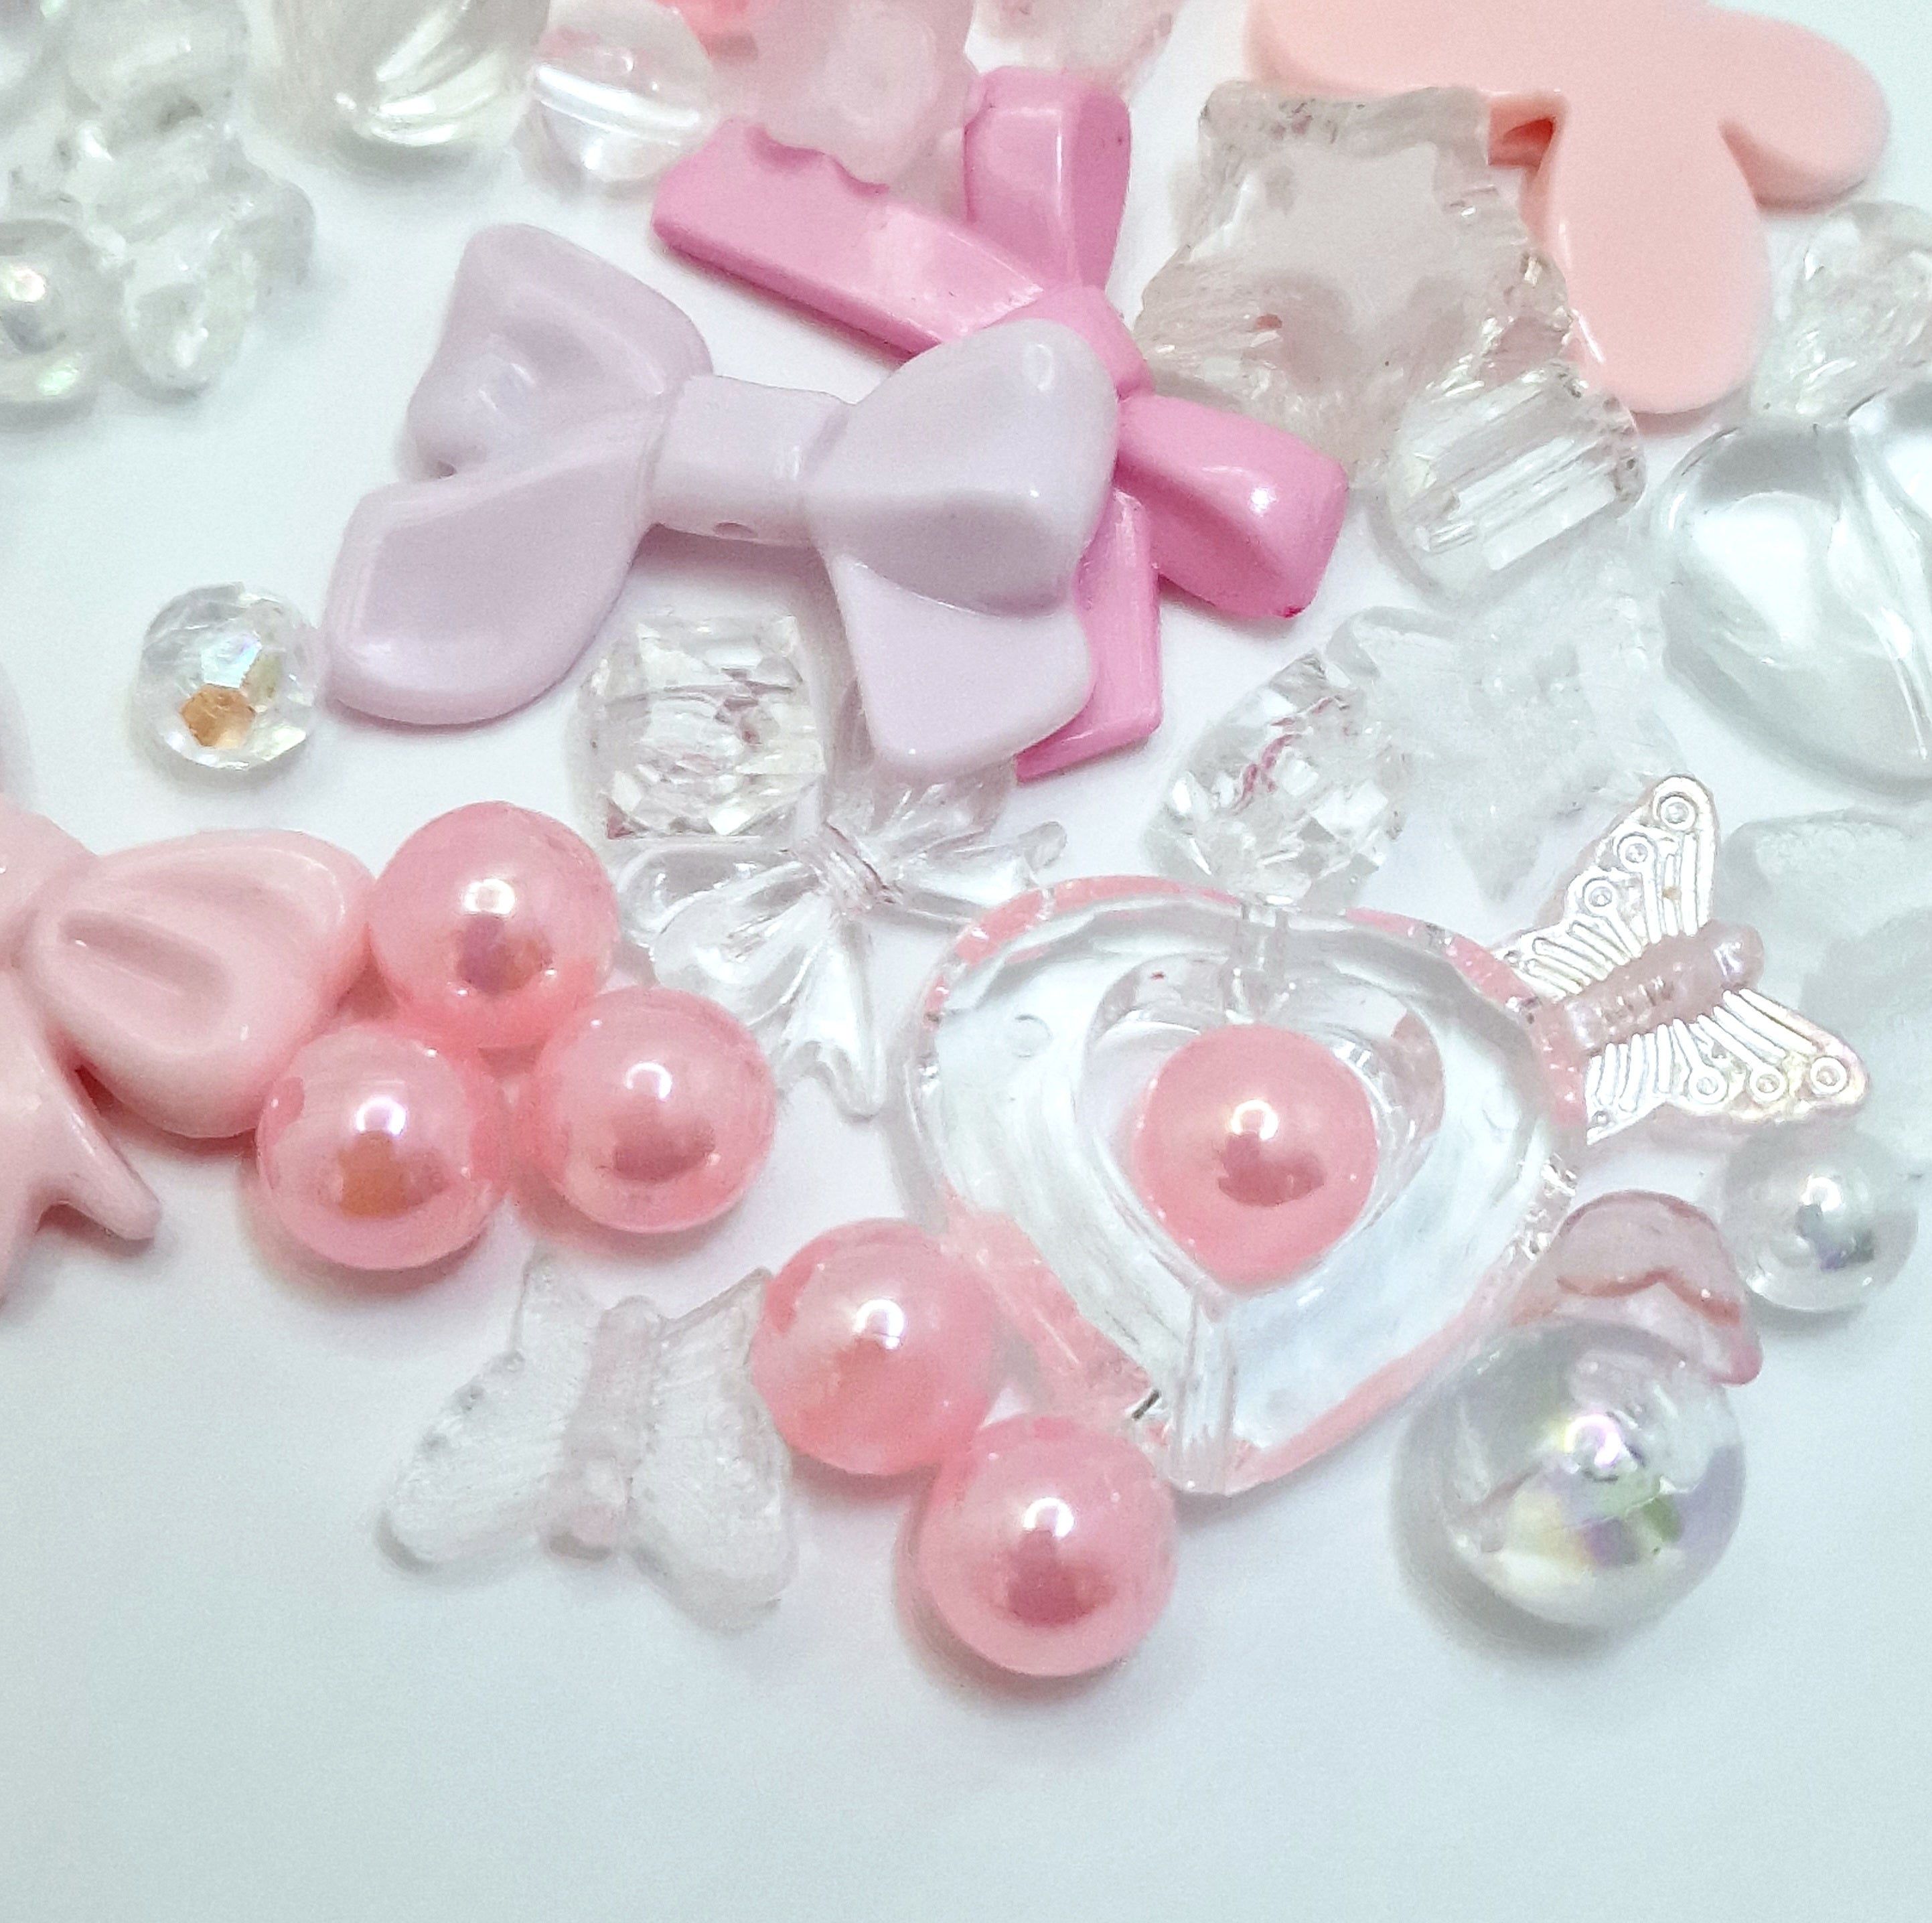 MajorCrafts 50g Light Pink Theme Mixed Shapes & Sizes Acrylic Beads